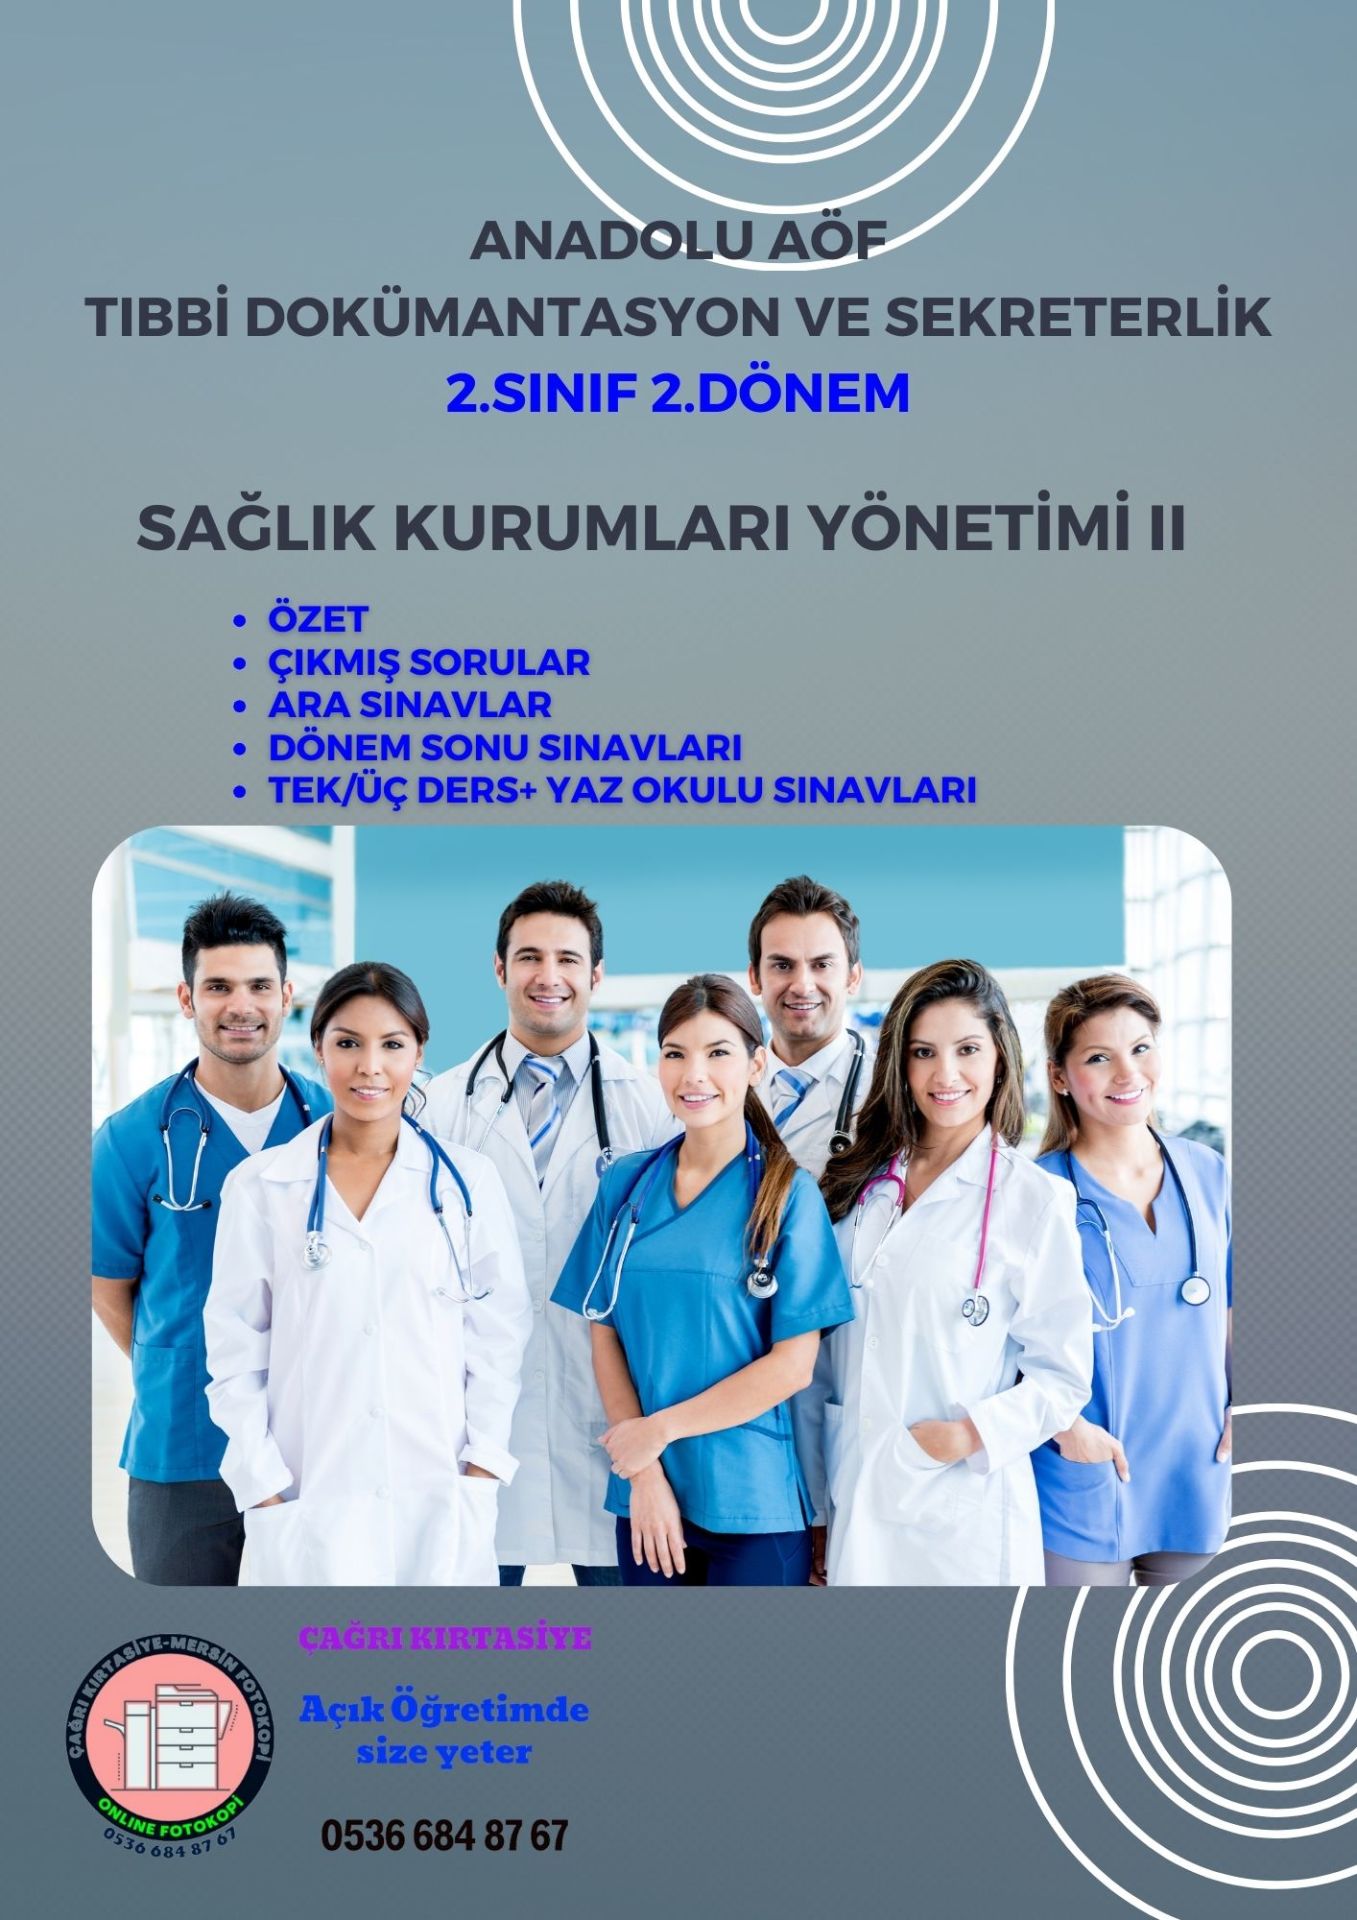 Anadolu Aöf Tds 2.Sınıf Sağlık Kurumları Yönetimi II